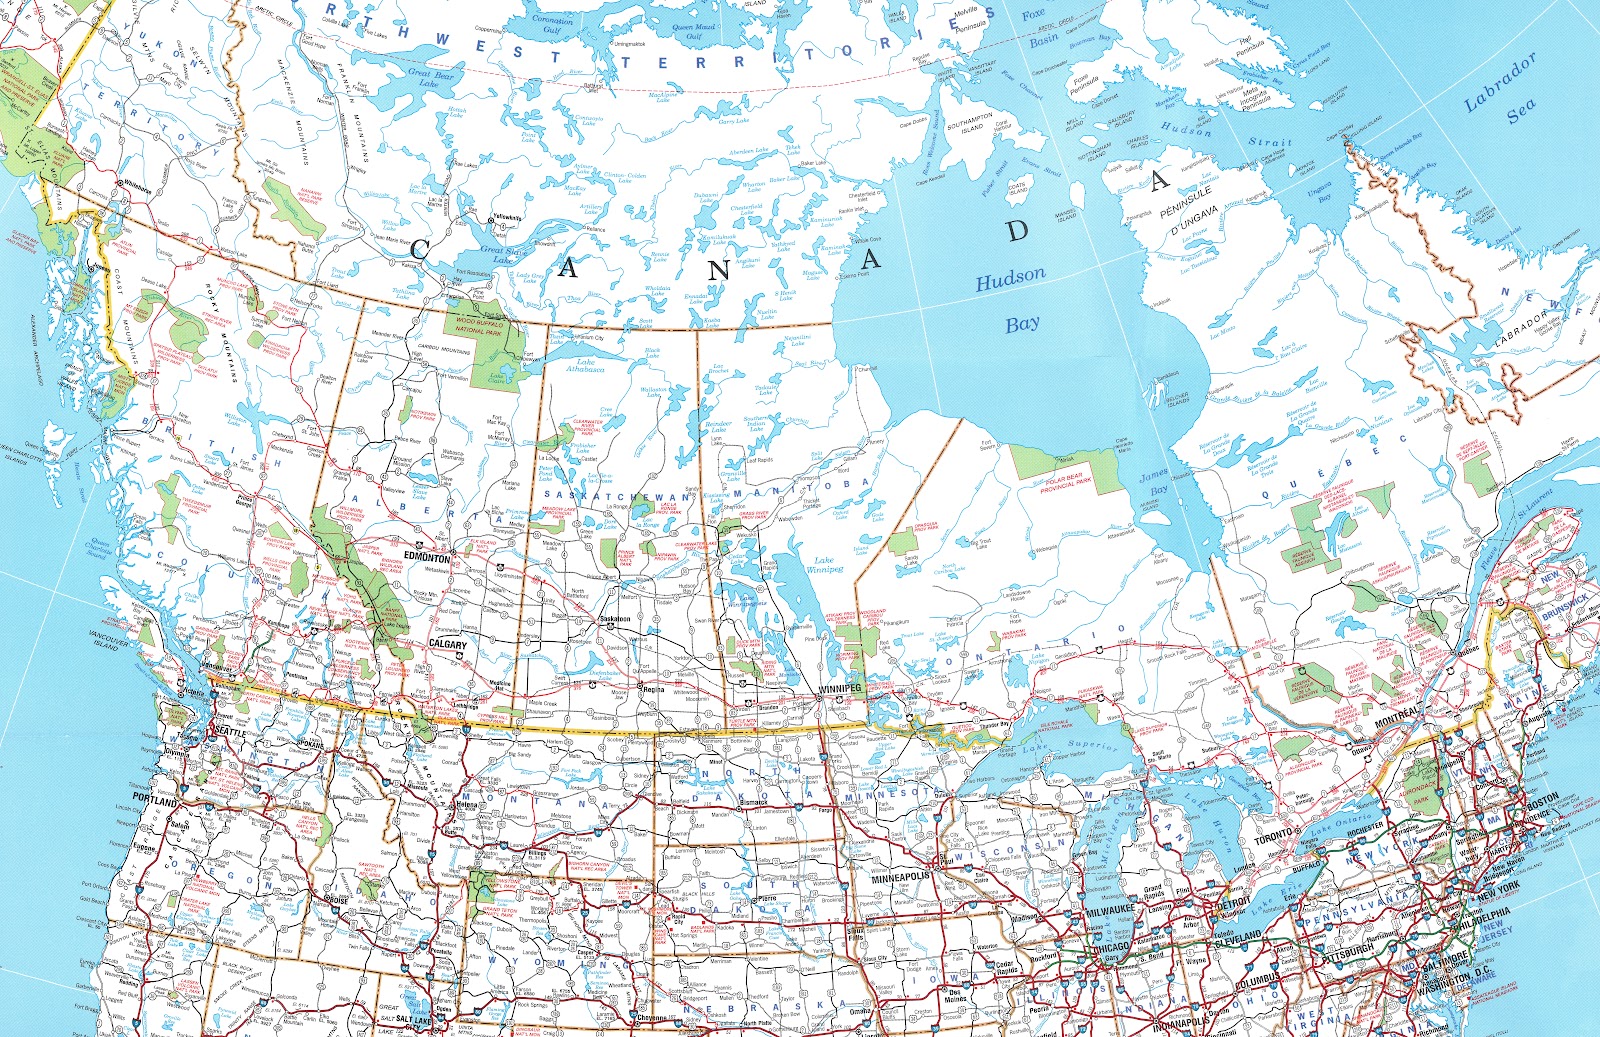 Gousha North America Map by Glen Pawelski